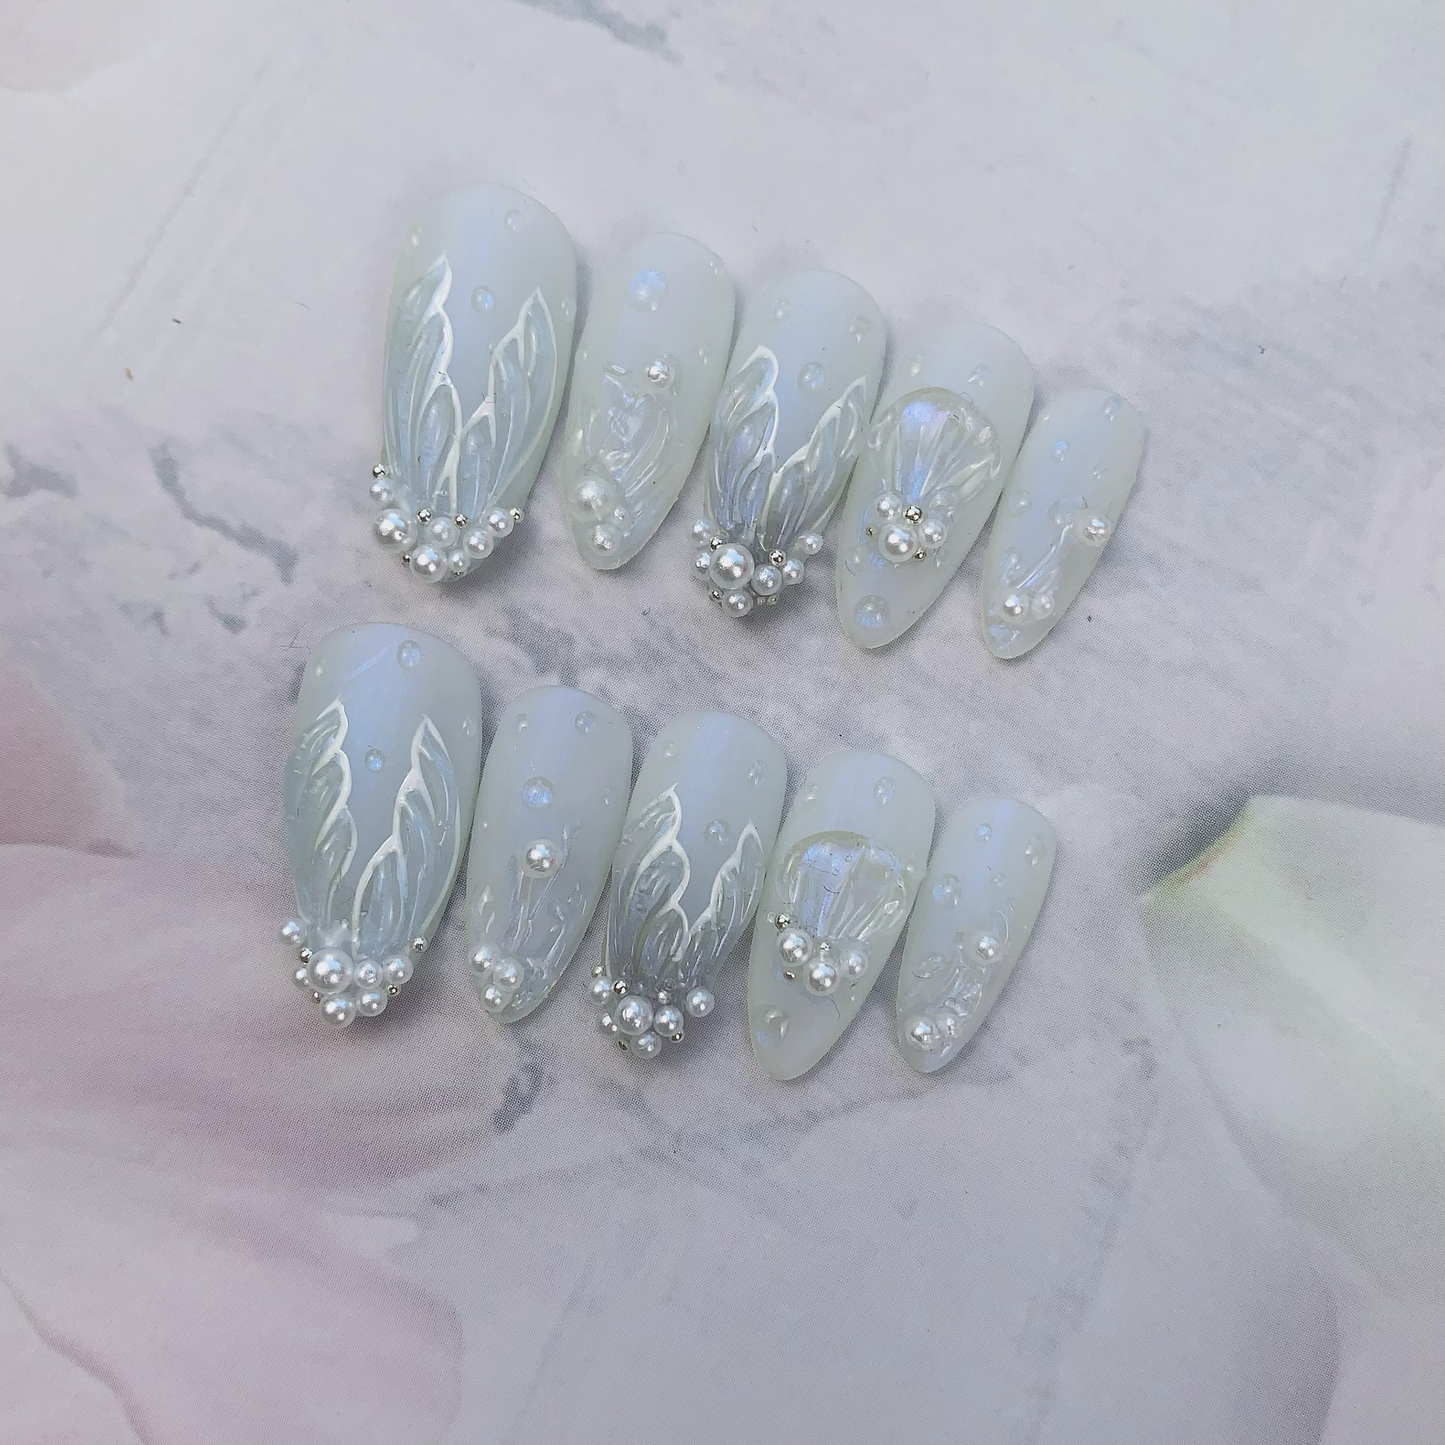 Almond White Mermaid Nail